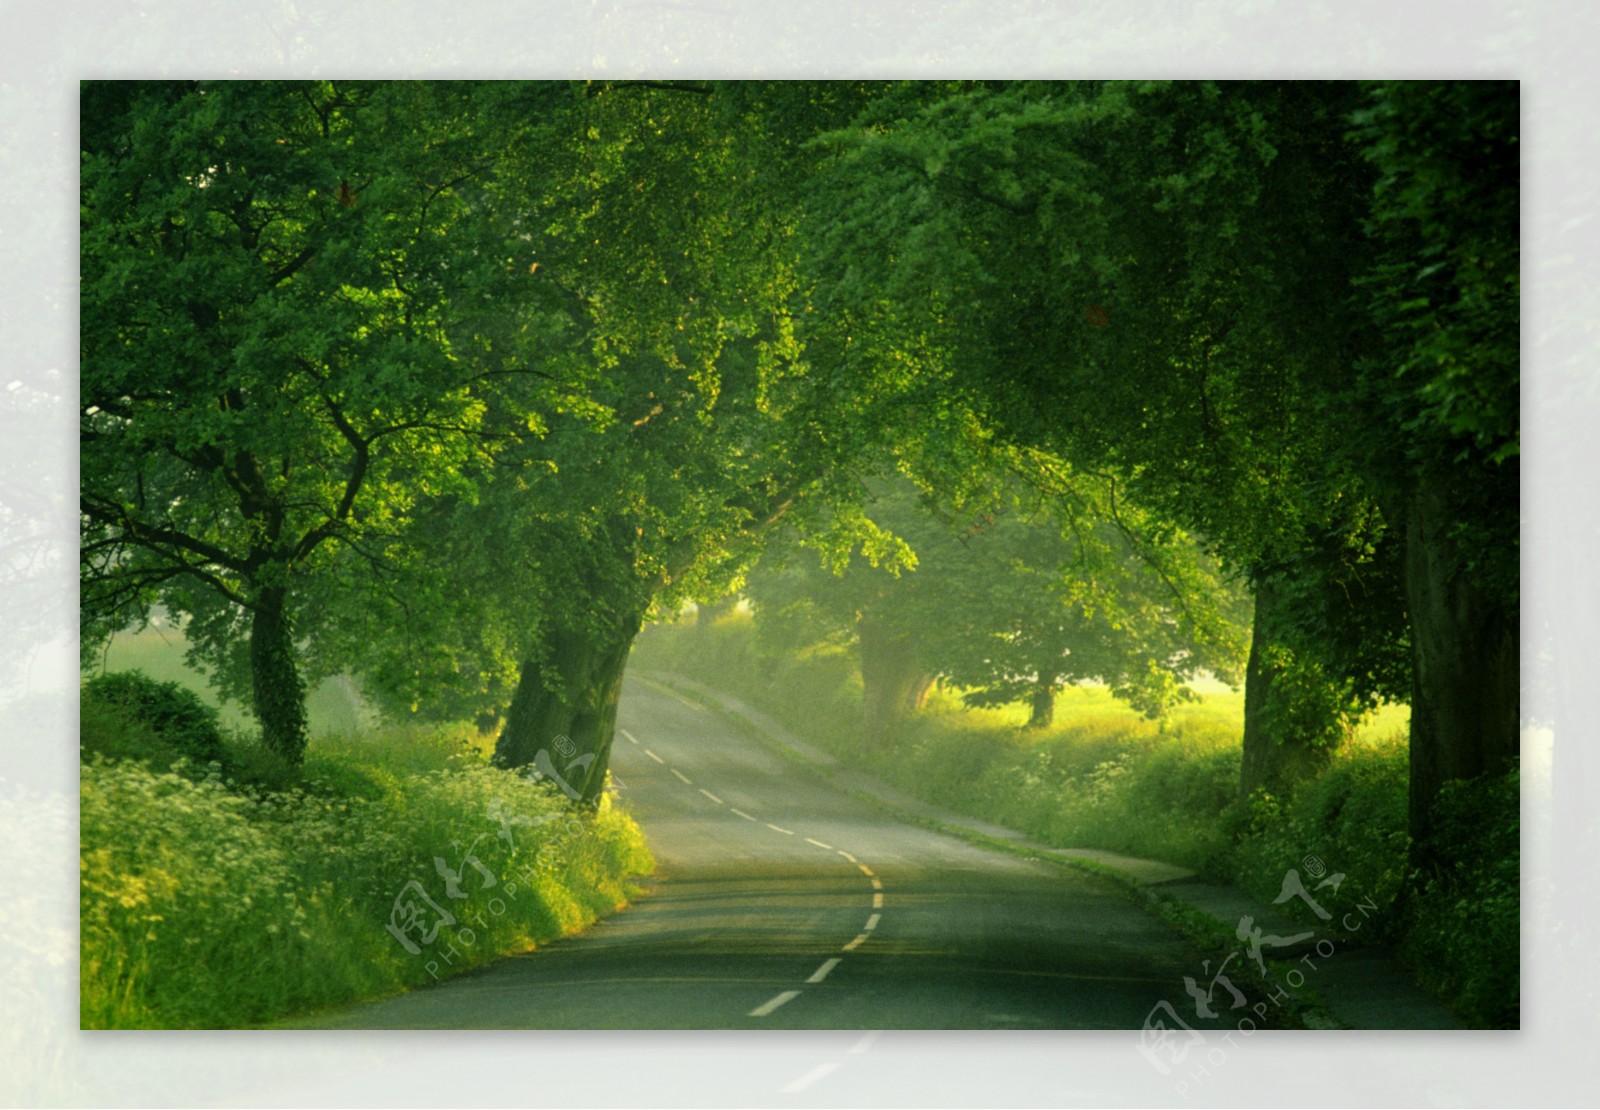 道路两边的绿色树林护眼自然风景桌面壁纸-壁纸图片大全